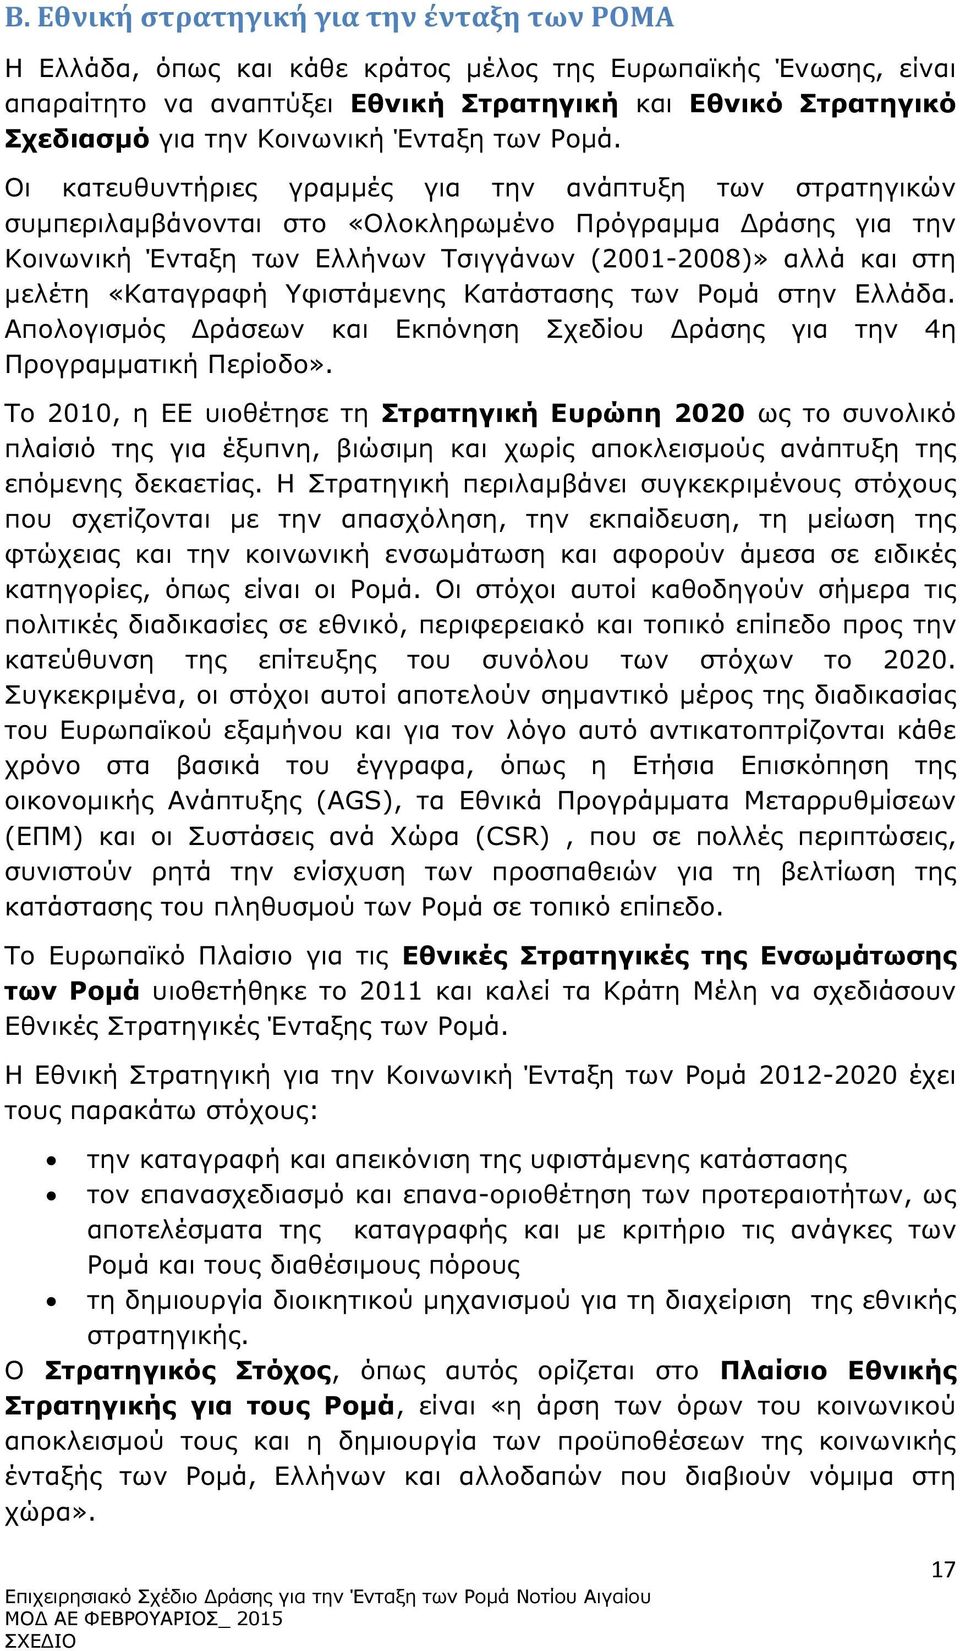 Οι κατευθυντήριες γραµµές για την ανάπτυξη των στρατηγικών συµπεριλαµβάνονται στο «Ολοκληρωµένο Πρόγραµµα ράσης για την Κοινωνική Ένταξη των Ελλήνων Τσιγγάνων (2001-2008)» αλλά και στη µελέτη